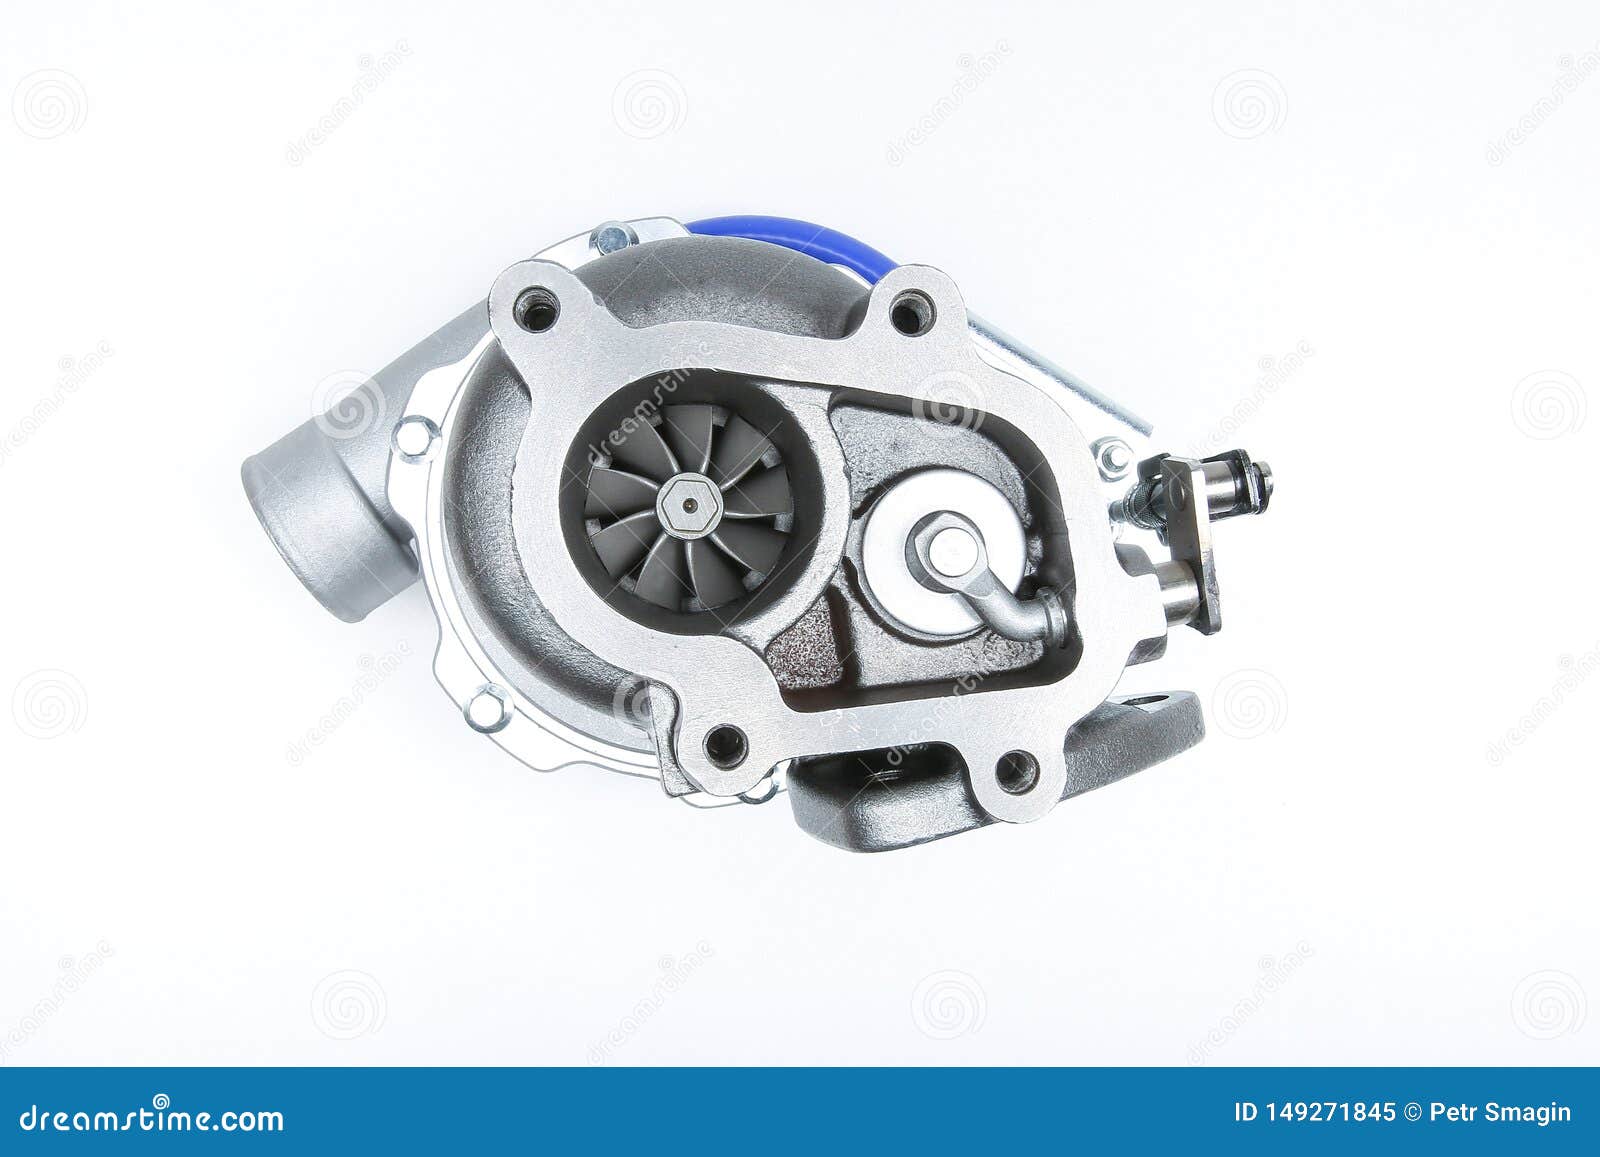 Car Turbocharger Isolated On White Background Turbo Engine Stock